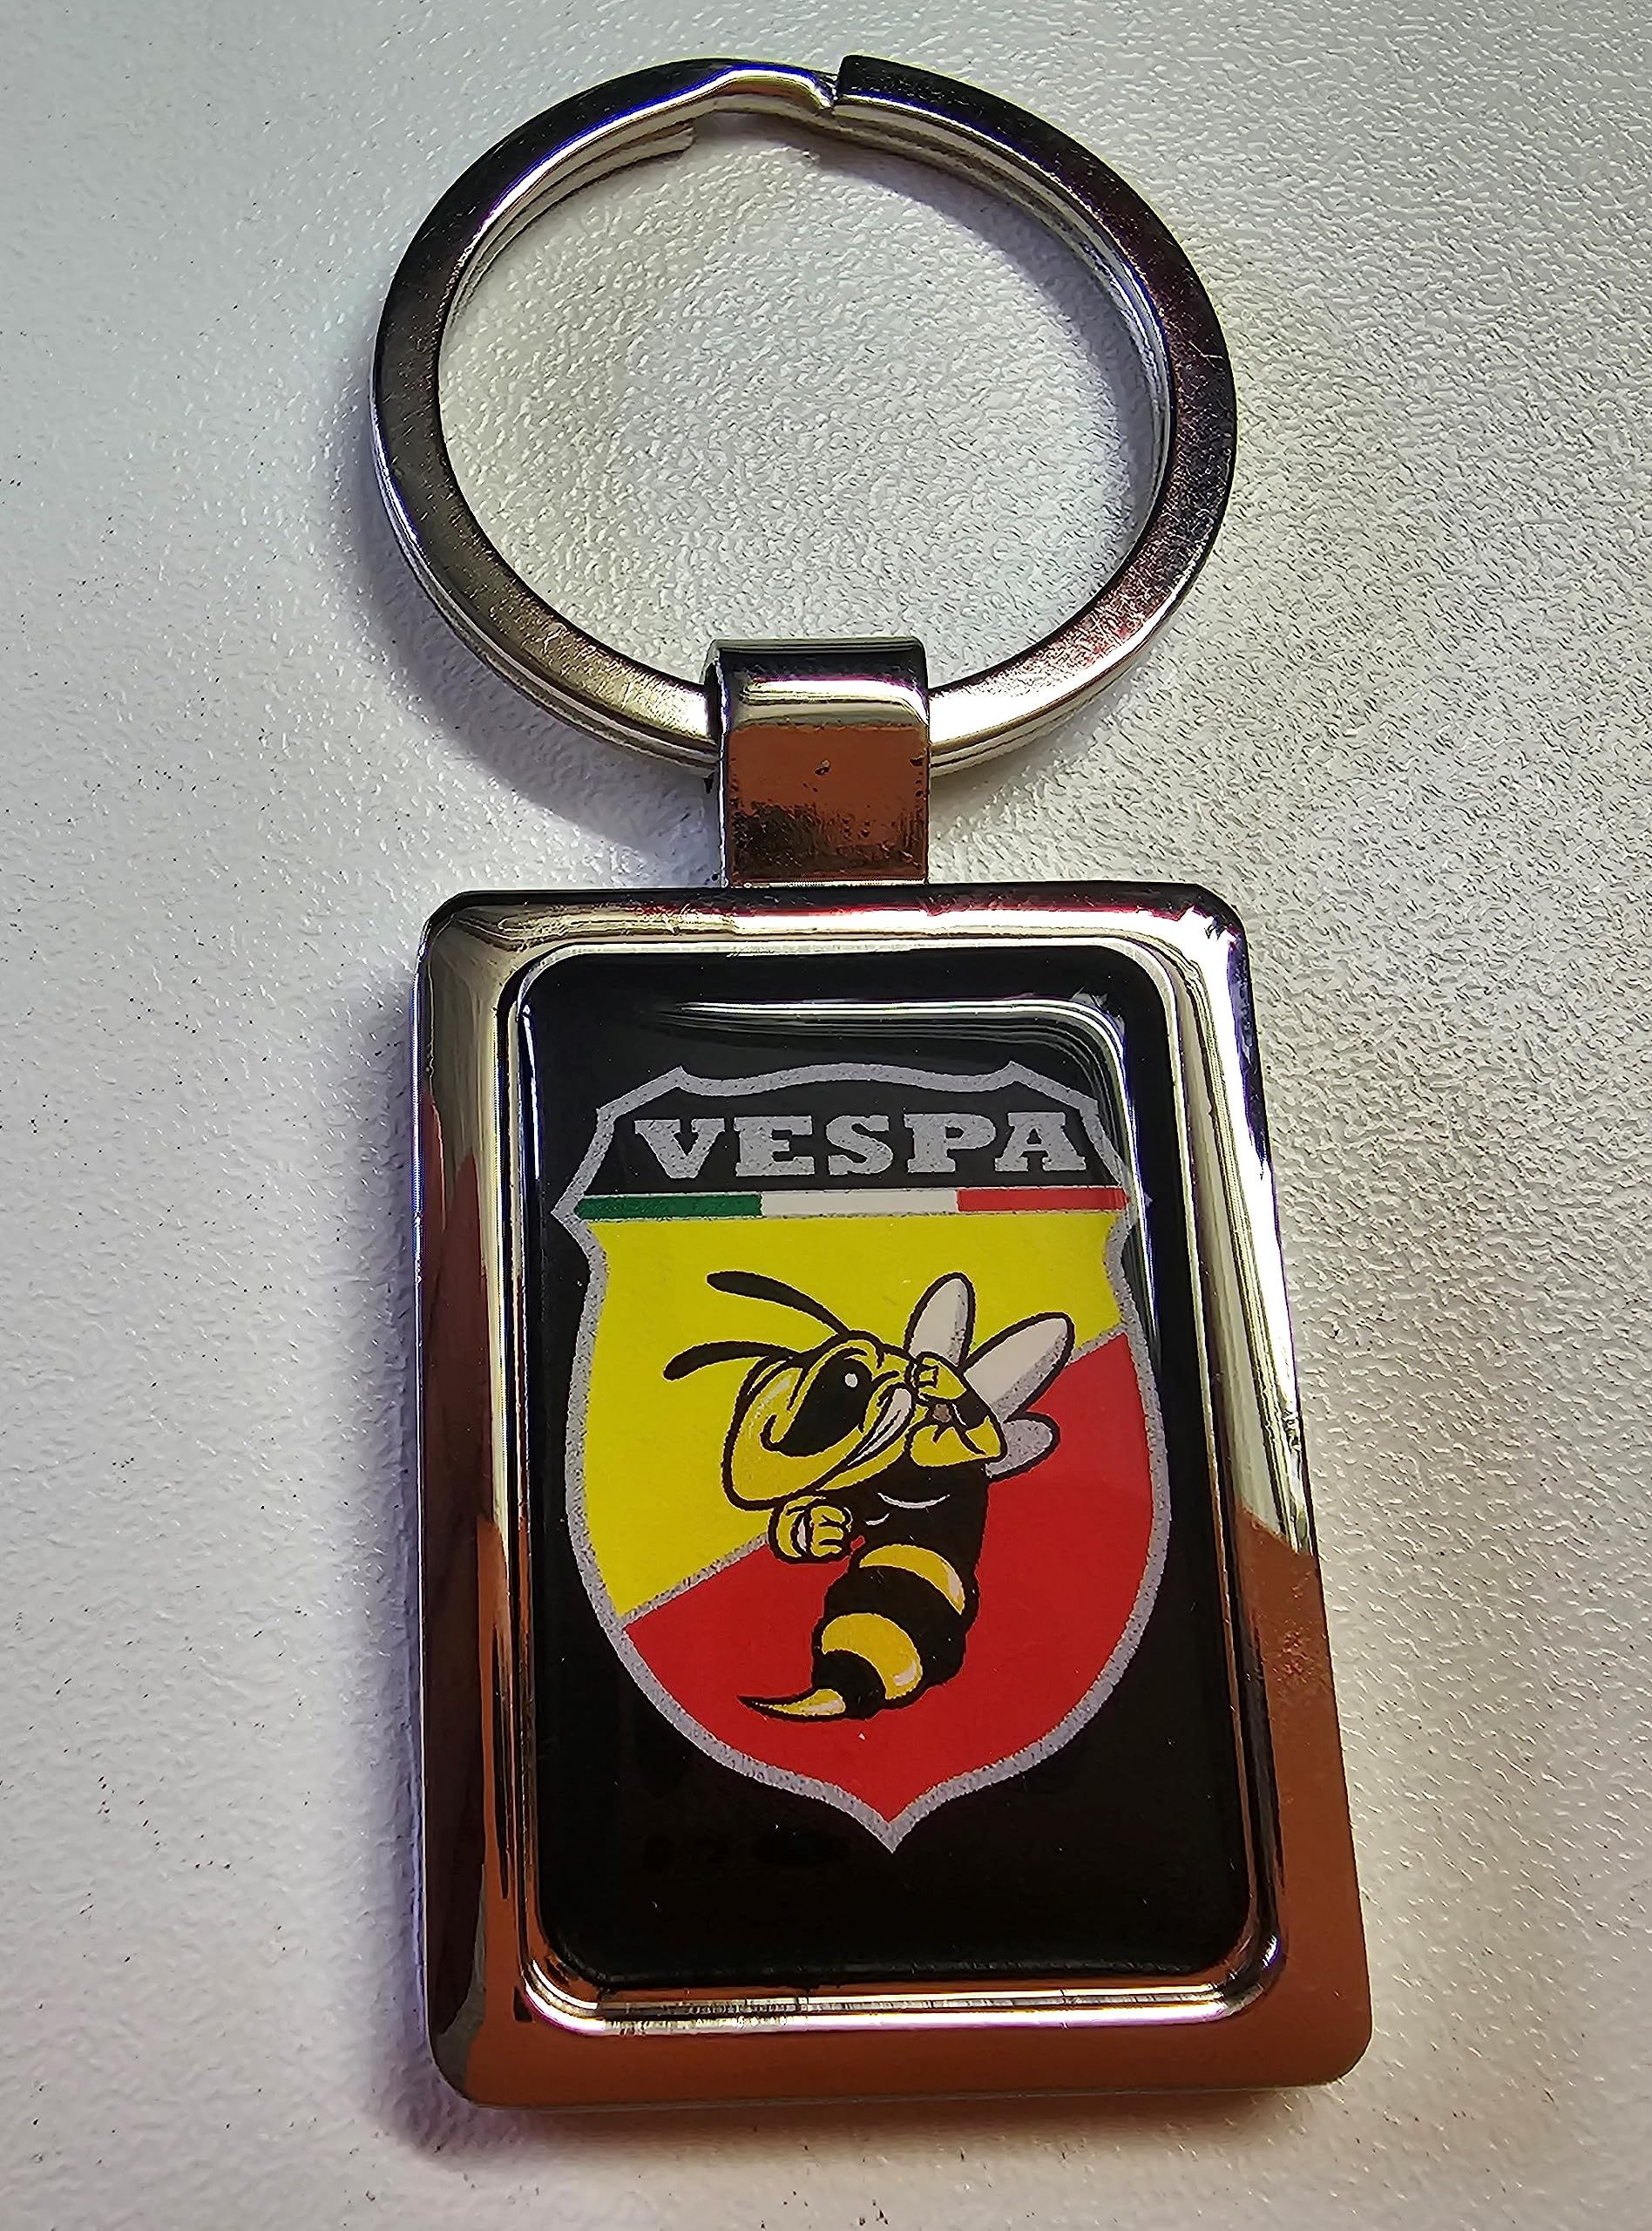 Vespa-Piaggio-Schlüsselanhänger SA 001 von Embleme